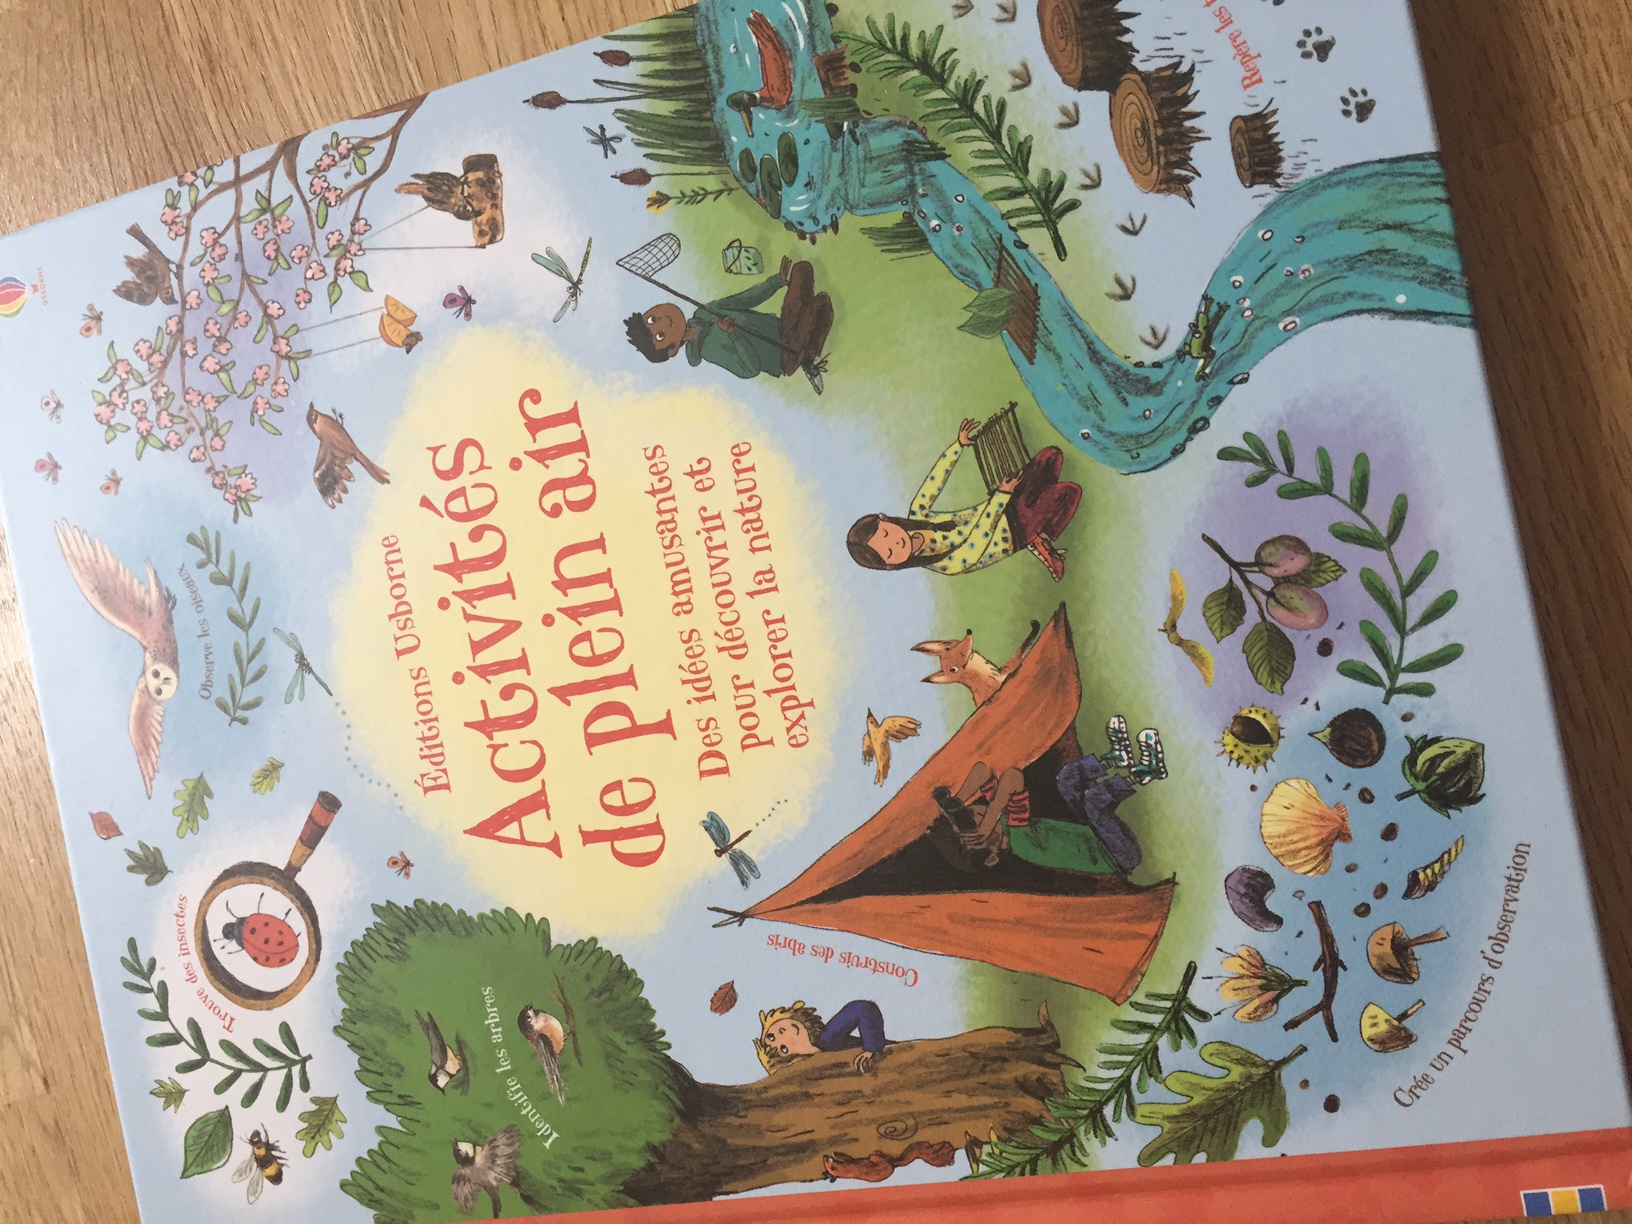 Jouer avec la nature - 70 activités d'éveil pour les tout petits - Livre  Petite enfance de Elise Mareuil - Dunod